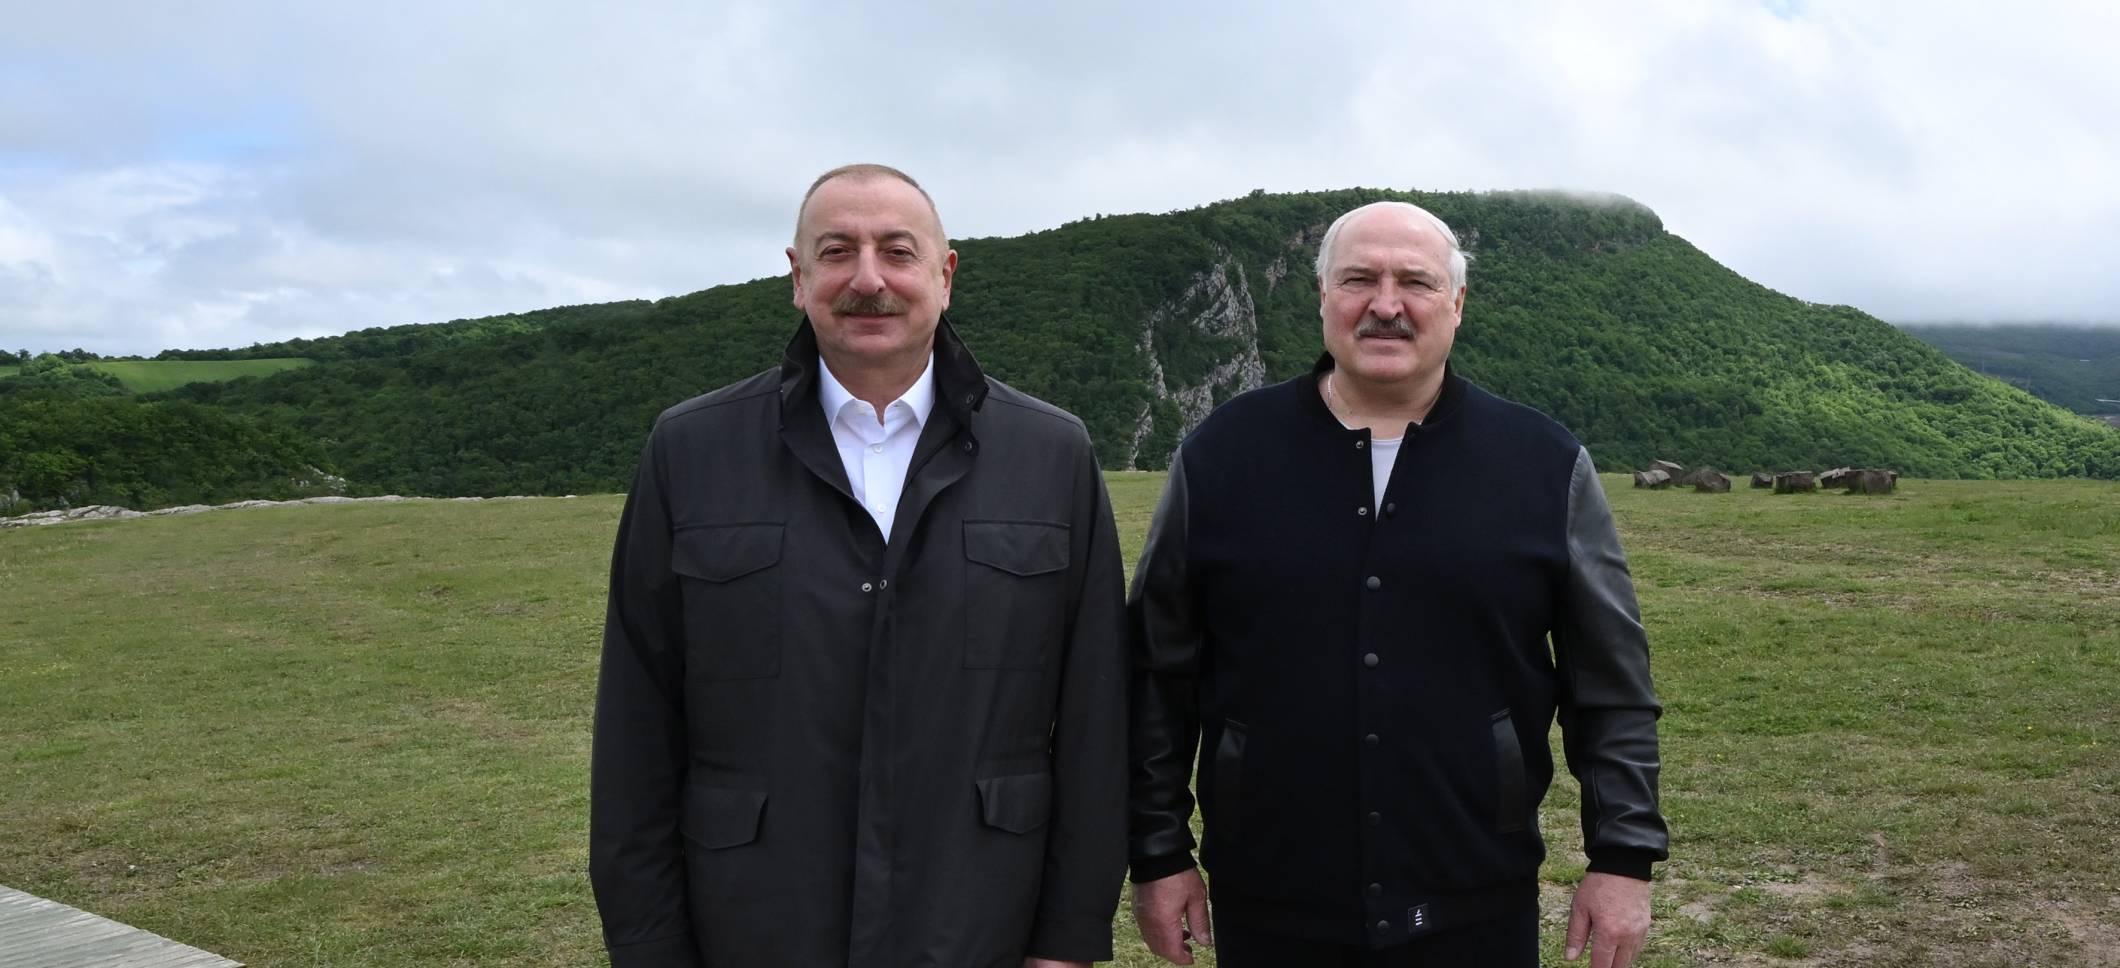 Ильхам Алиев и Президент Александр Лукашенко посетили Джыдыр дюзю